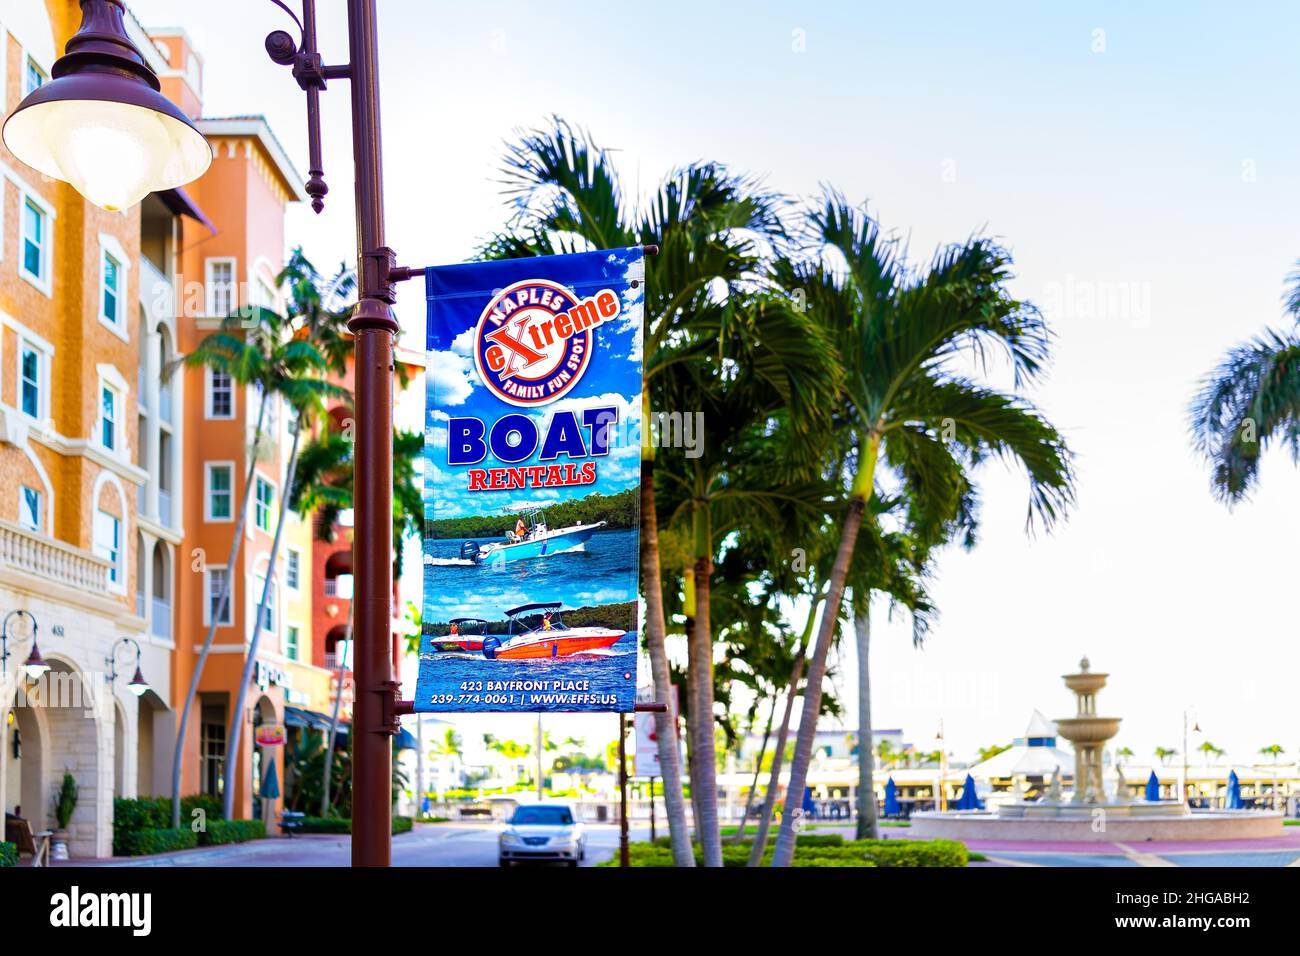 Napoli, USA - 13 settembre 2021: Napoli, Florida Bayfront Place Center con cartello per Extreme business società noleggio barche con palme e acqua Foto Stock